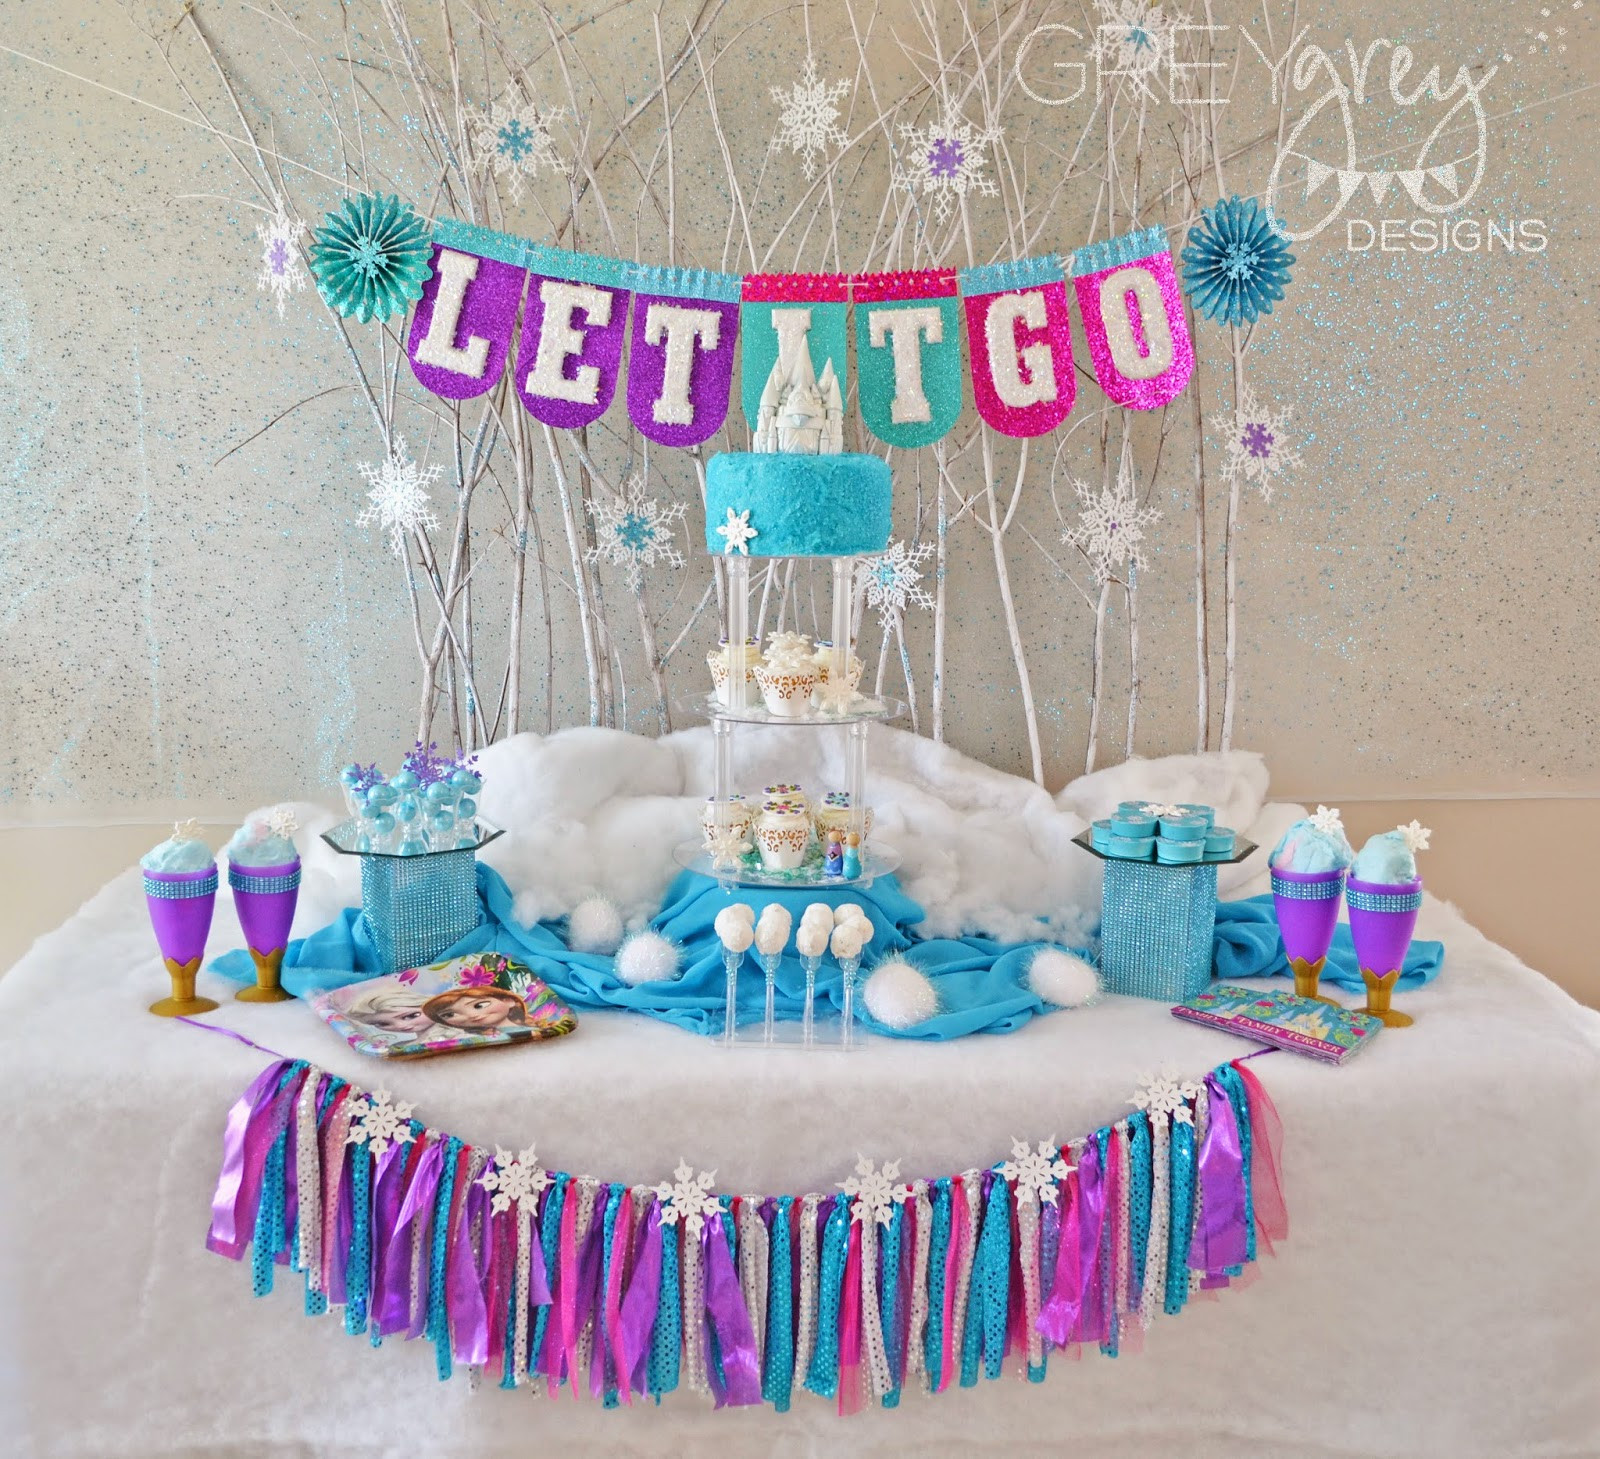 Frozen Birthday Party Supplies
 GreyGrey Designs Giveaway Frozen Birthday Party Pack for